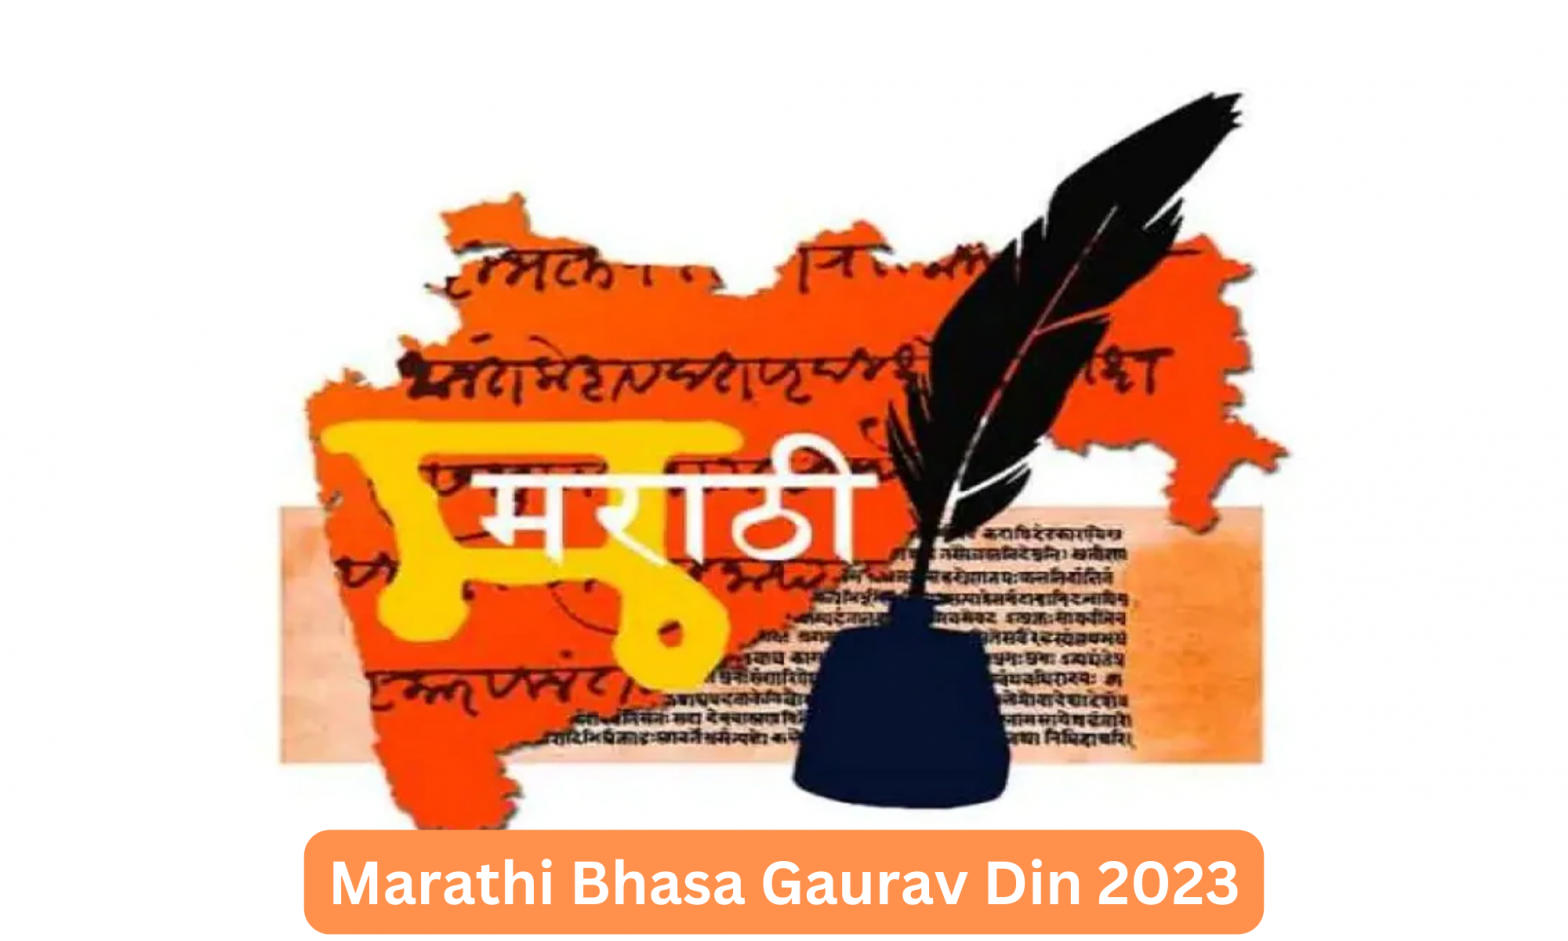 Marathi Bhasa Gaurav Din 2023